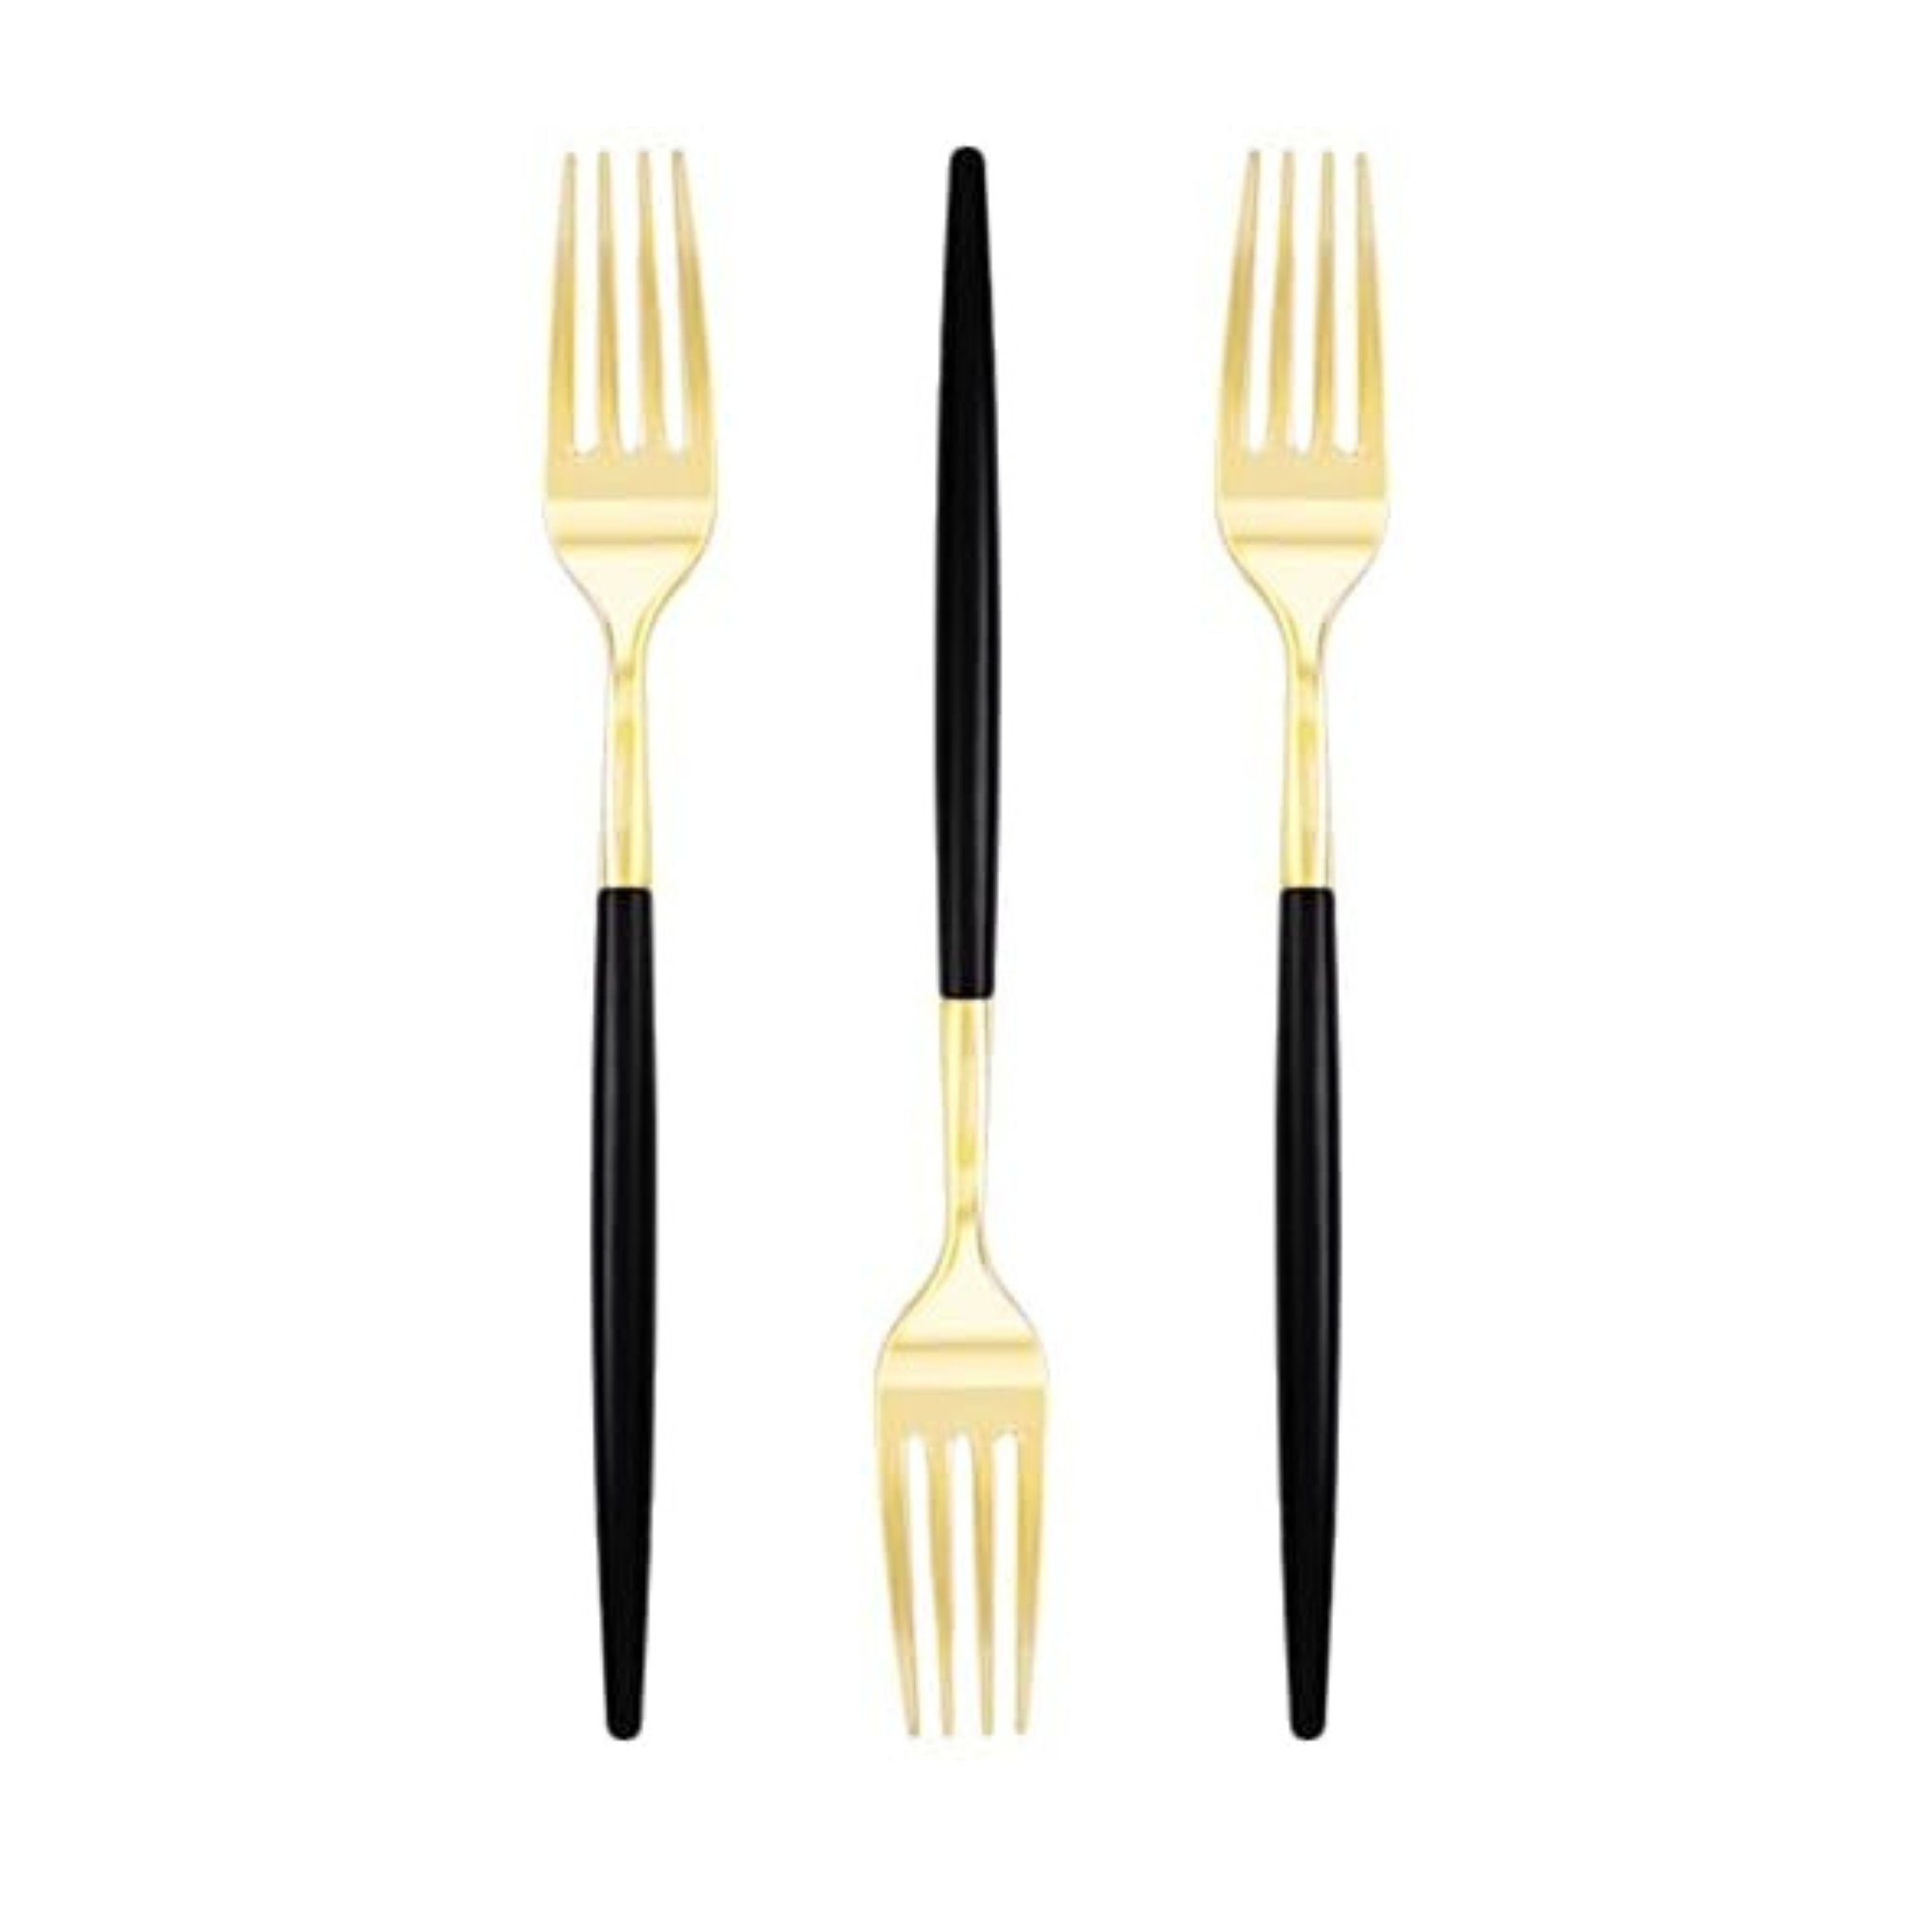 Elegant Black/Gold Cutlery Set (Forks)